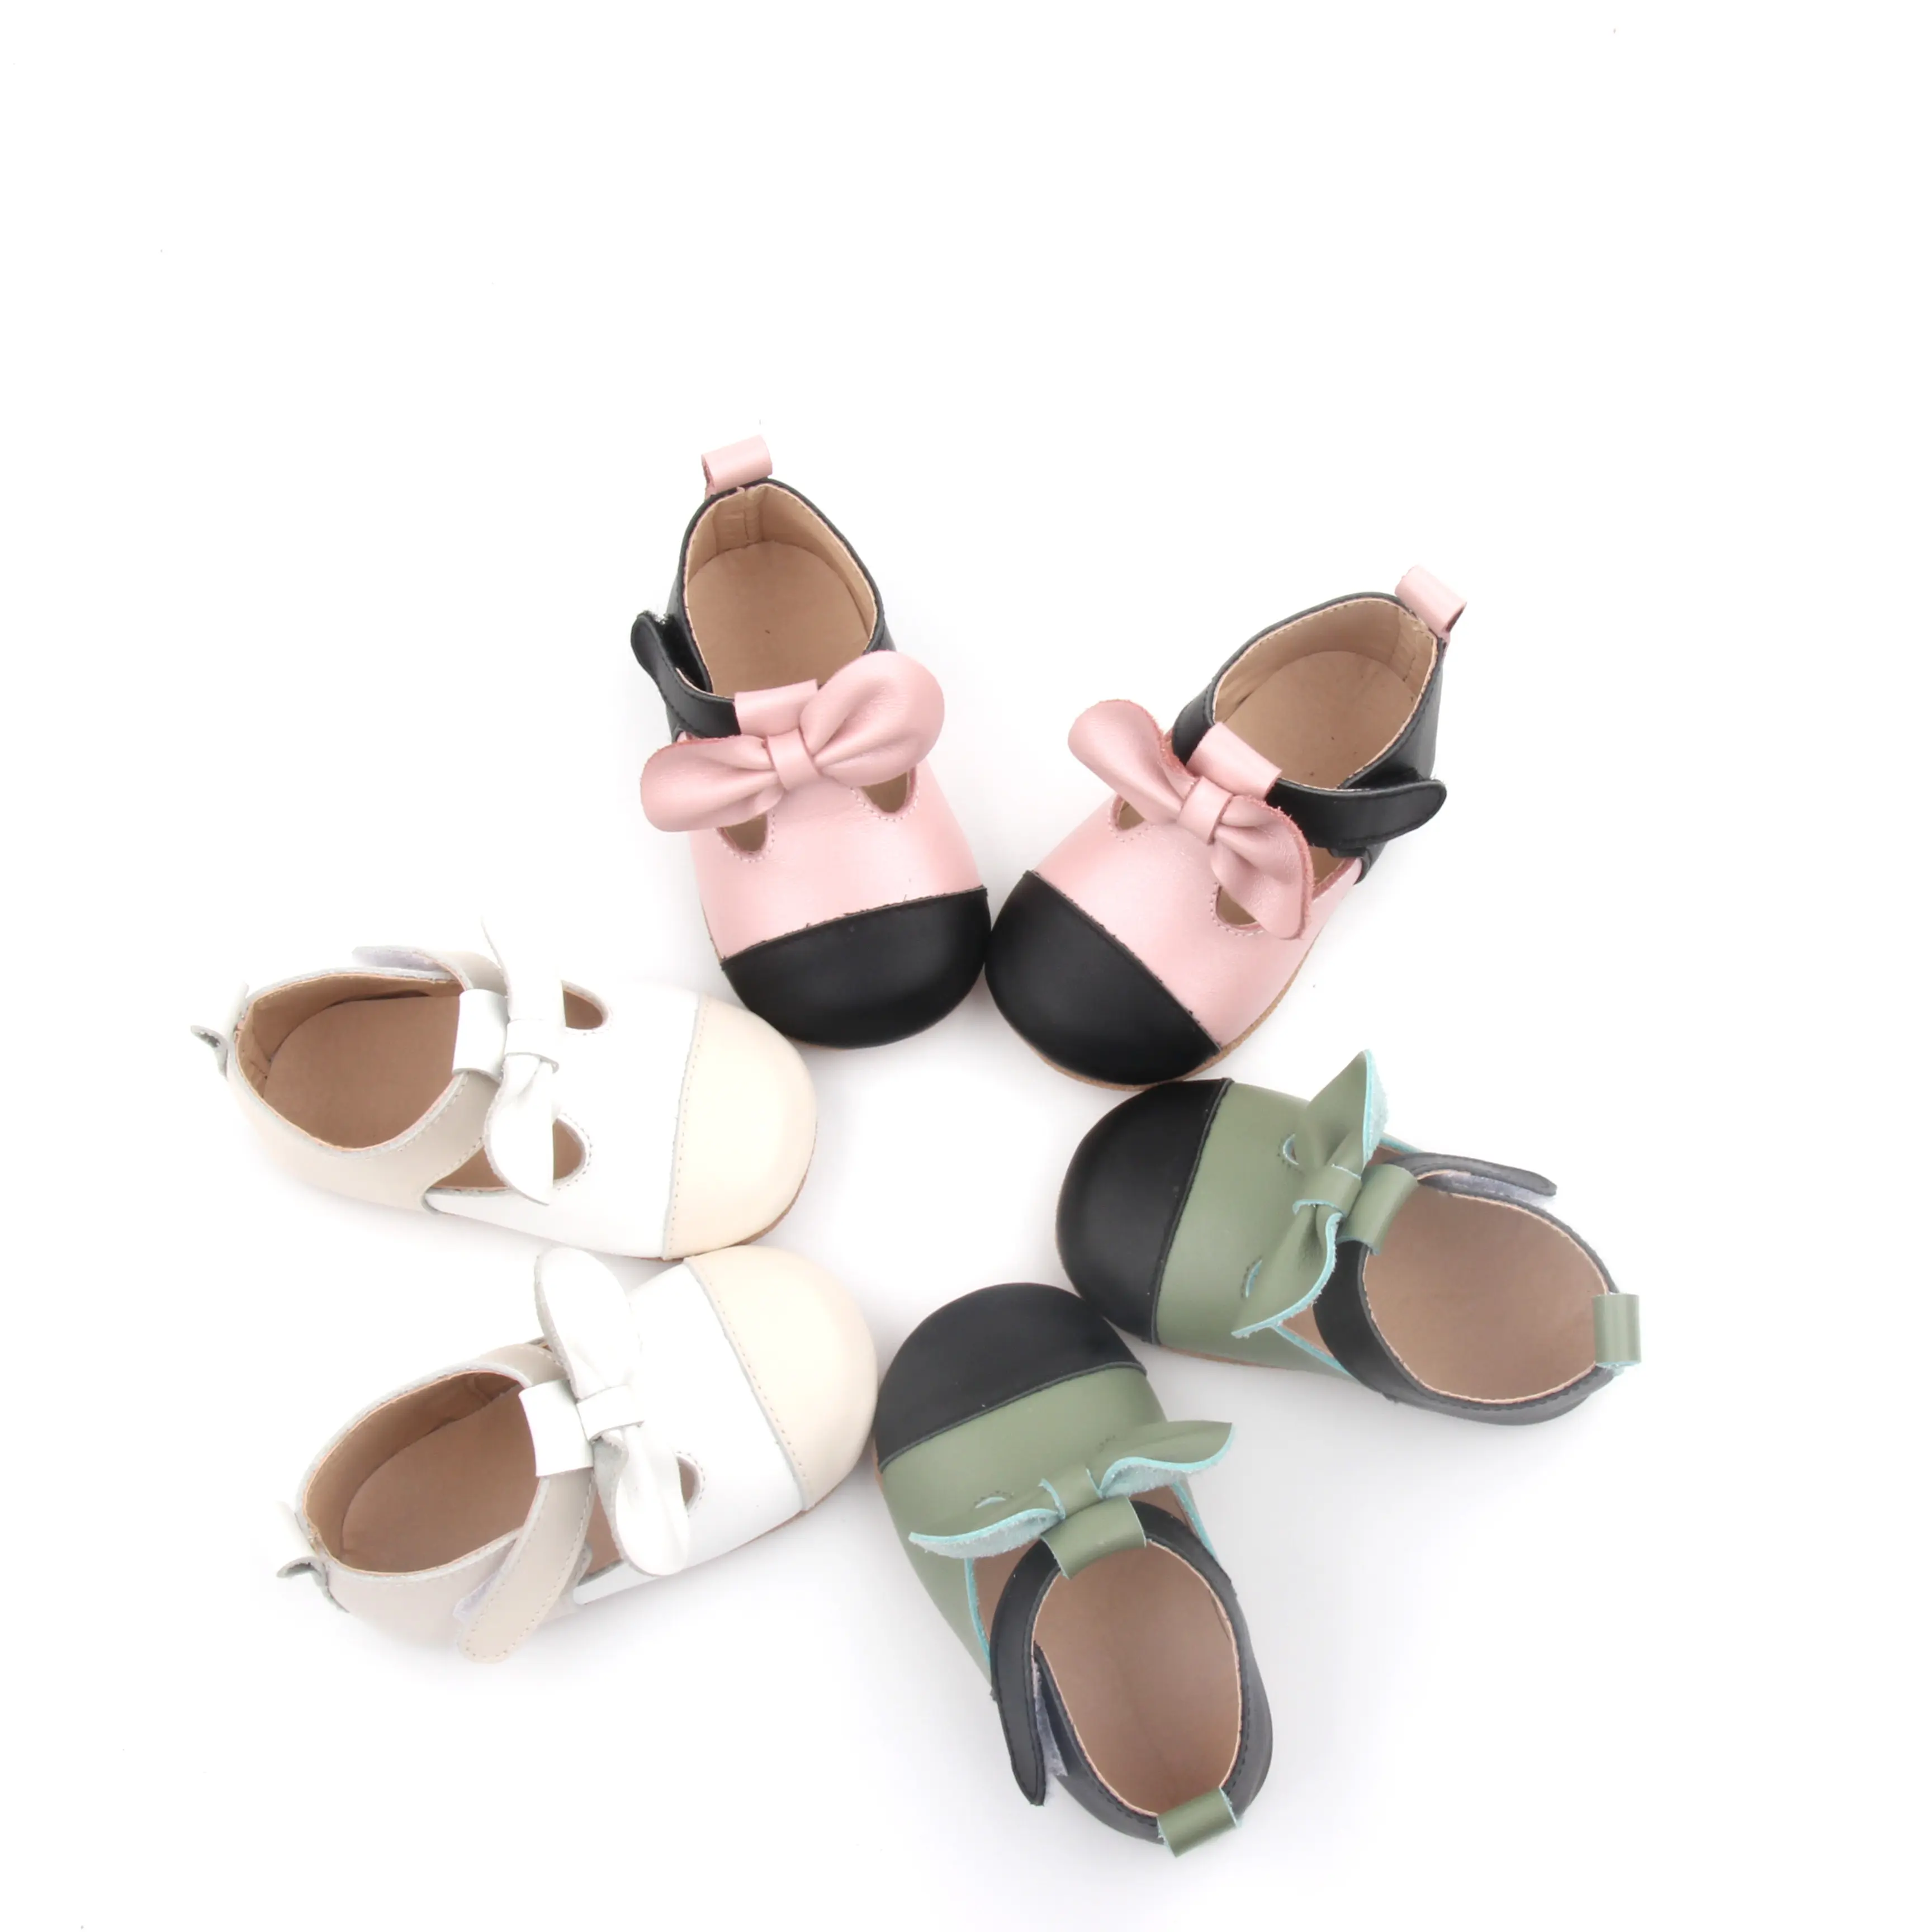 BEIEBIENOYA-zapatos de vestir para bebé, de cuero con lazo, color rosa y negro, talla 2-13, suela de ante ligera, para recién nacido